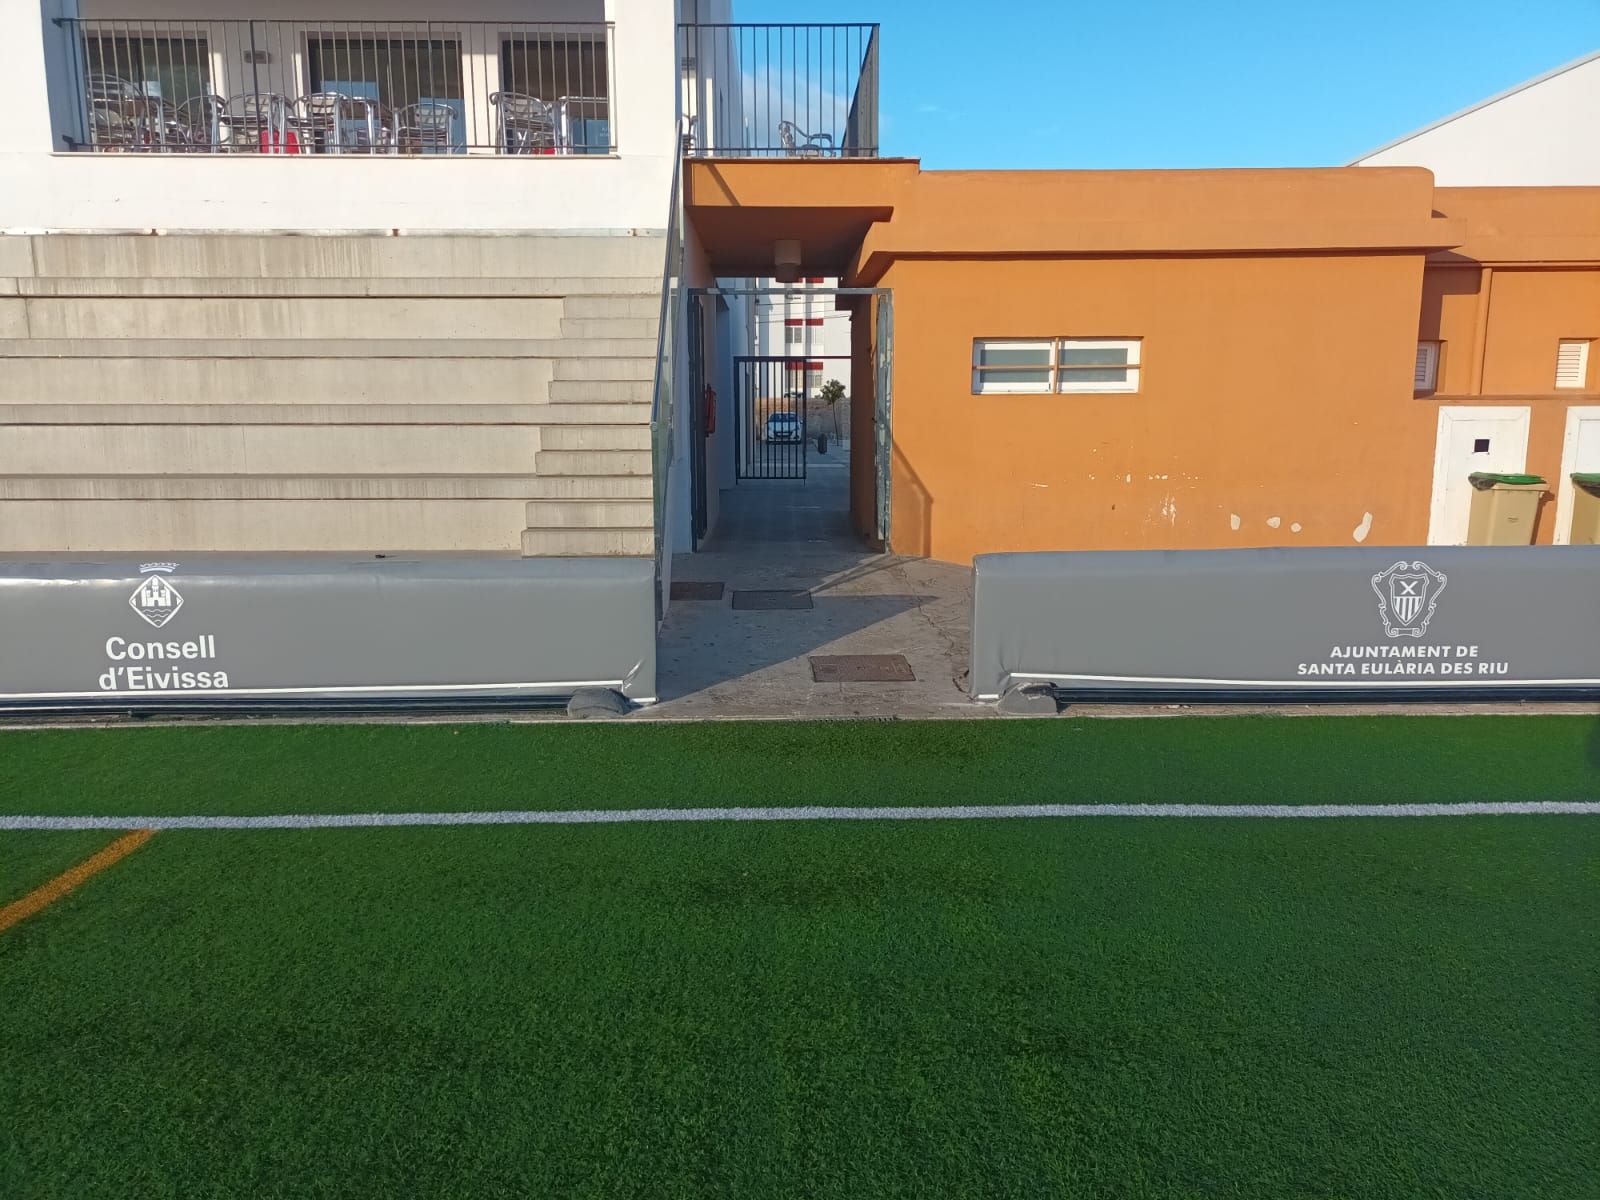 Finalitza la instal·lació de proteccions al camp de futbol des Puig d'en Valls per a evitar lesions greus